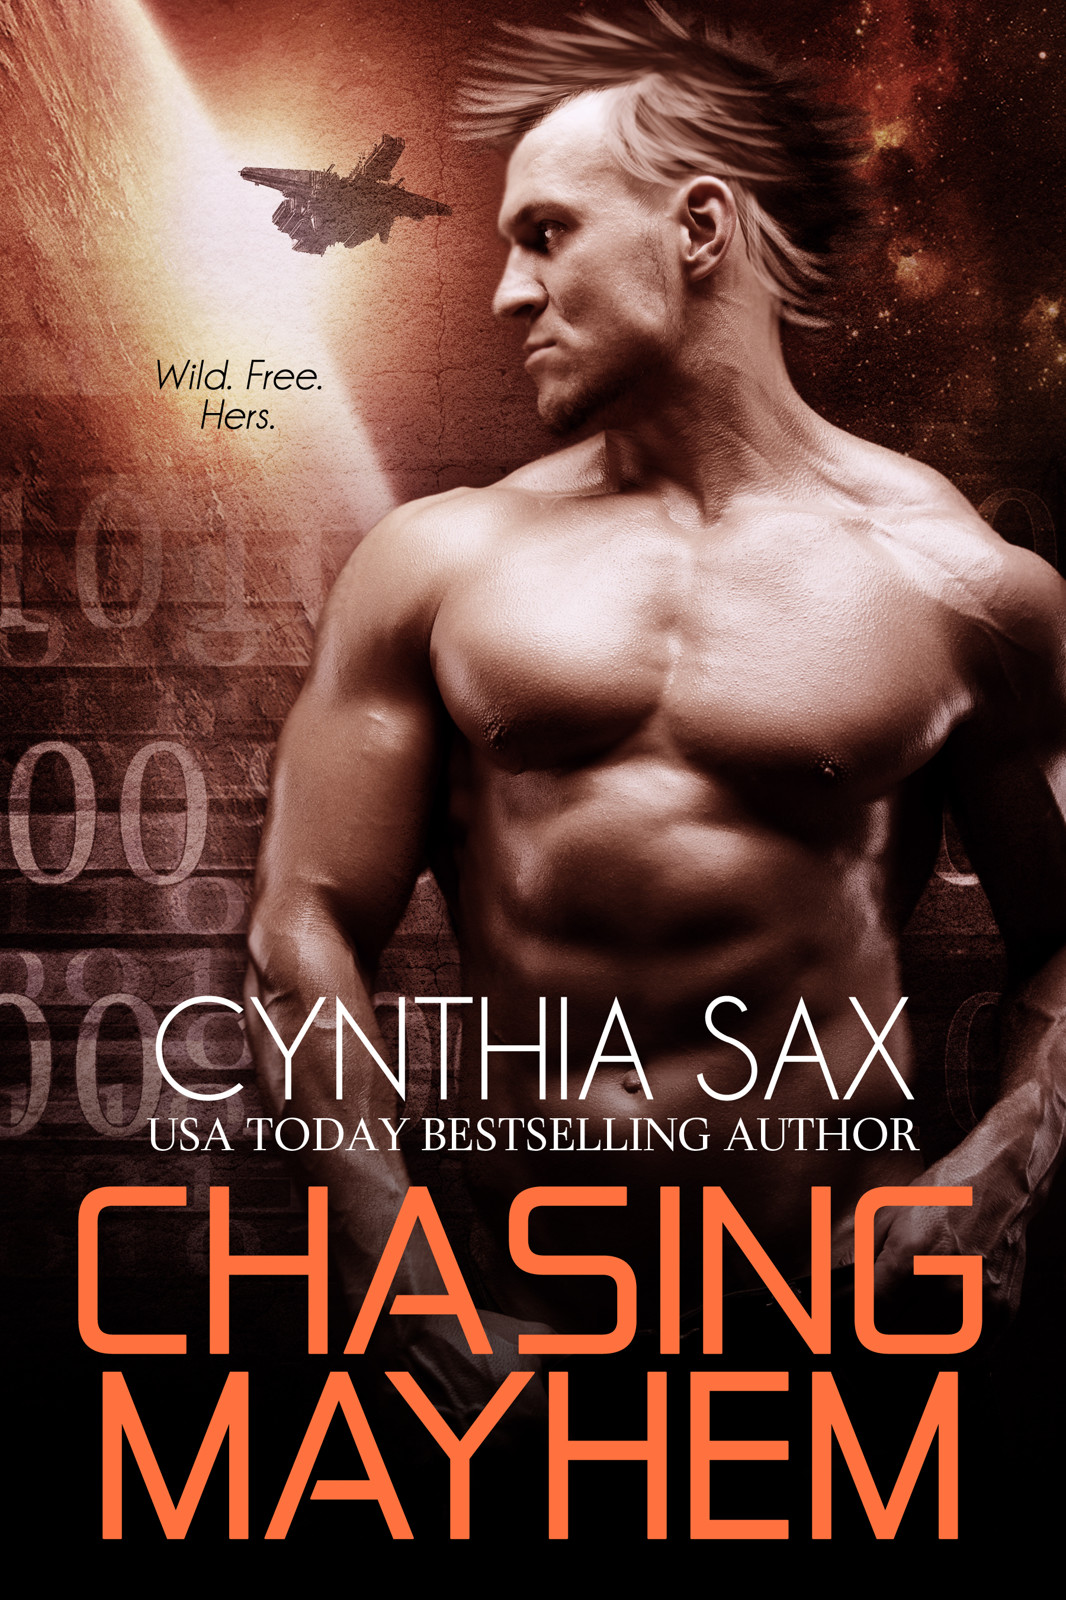 Chasing Mayhem by Cynthia Sax